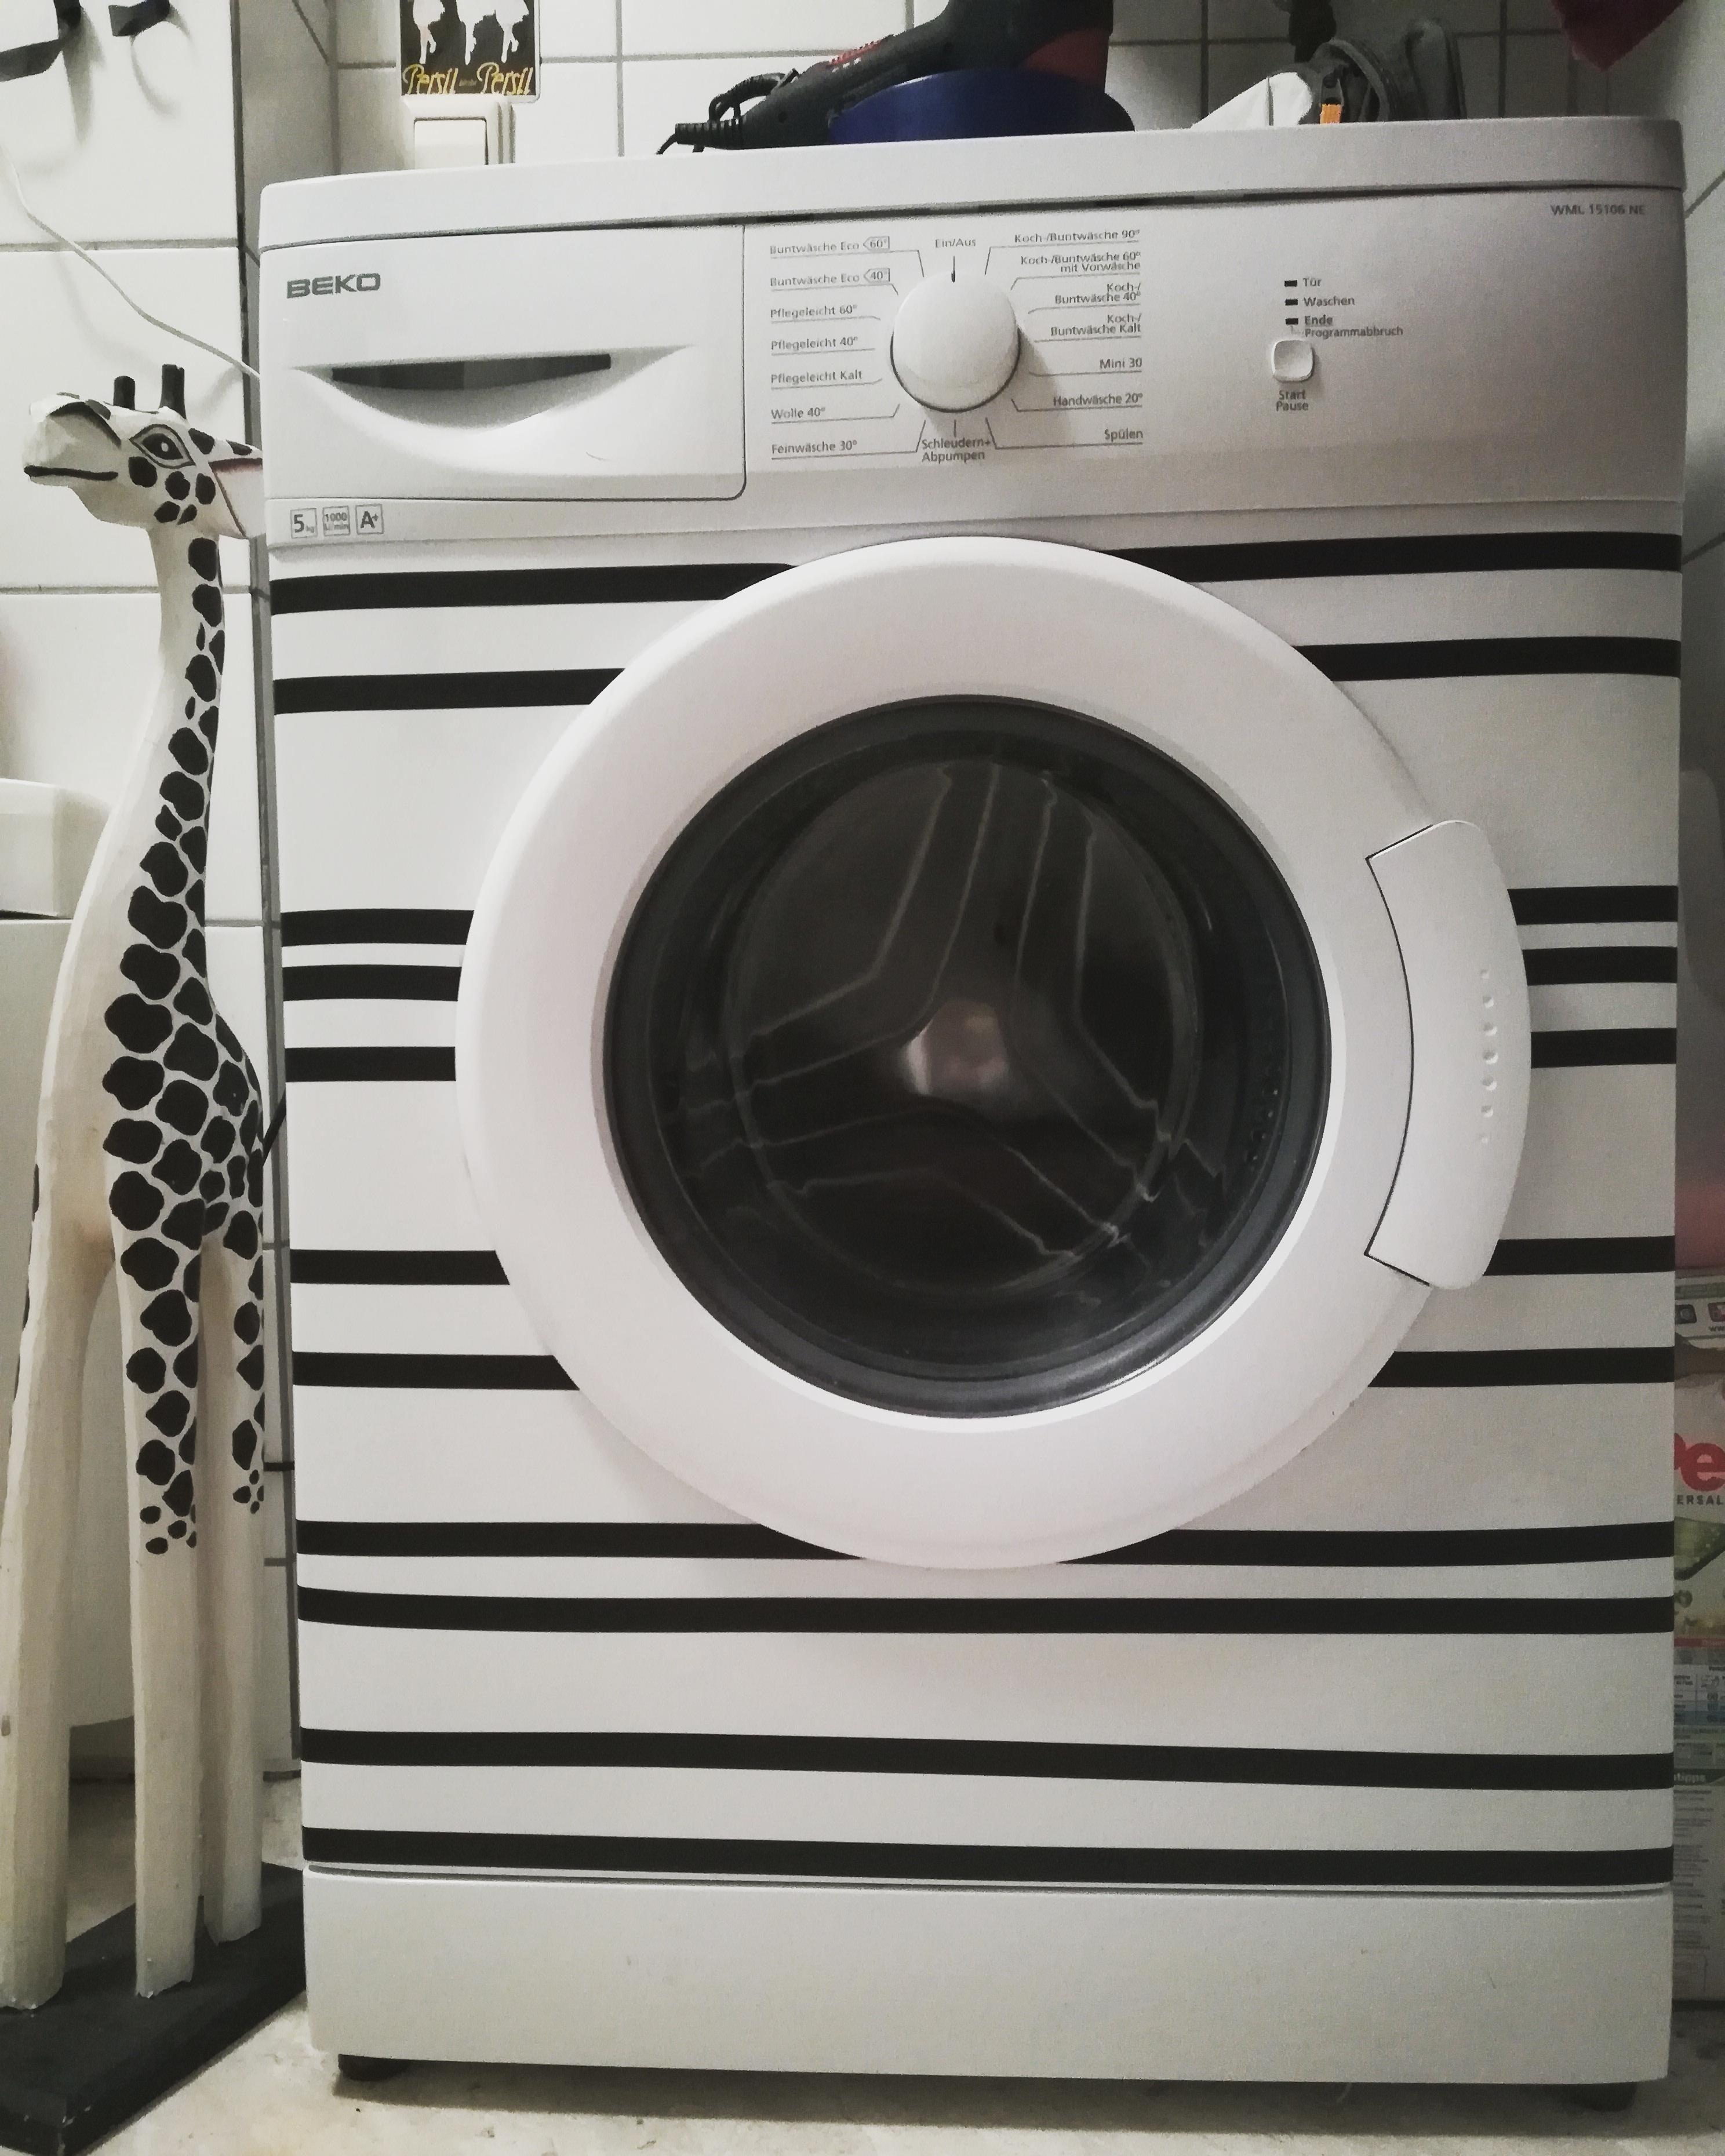 #Waschmaschine #aufgepimpt #streifen #zebra #giraffe #schwarzweiß #diy #creative 